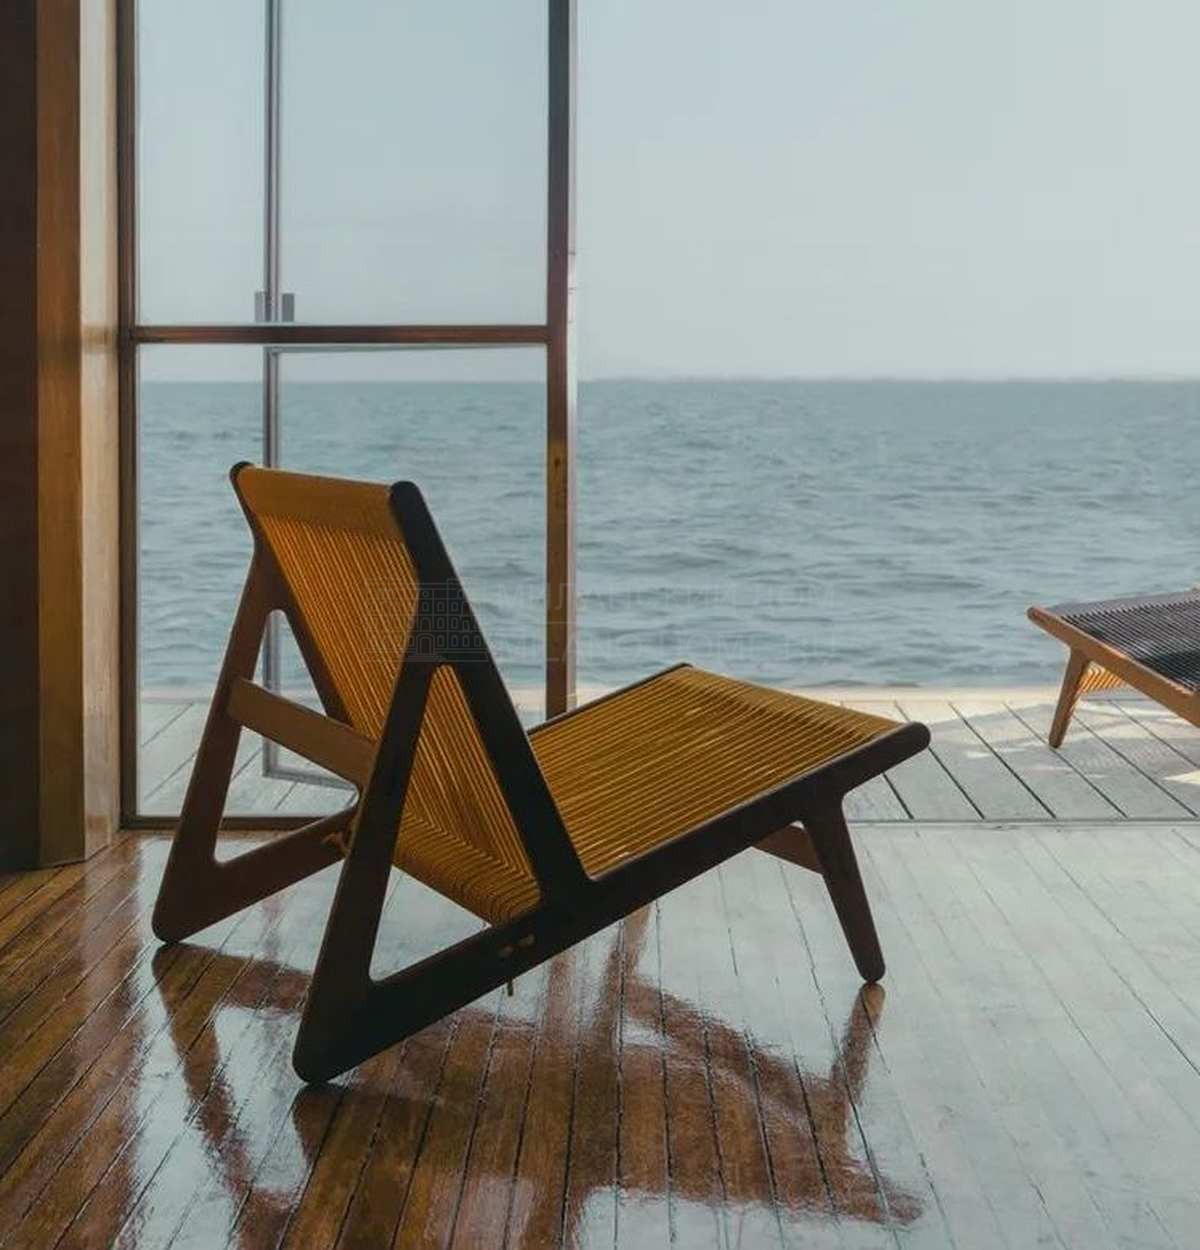 Лаунж кресло MR01 Initial outdoor lounge chair из Дании фабрики GUBI